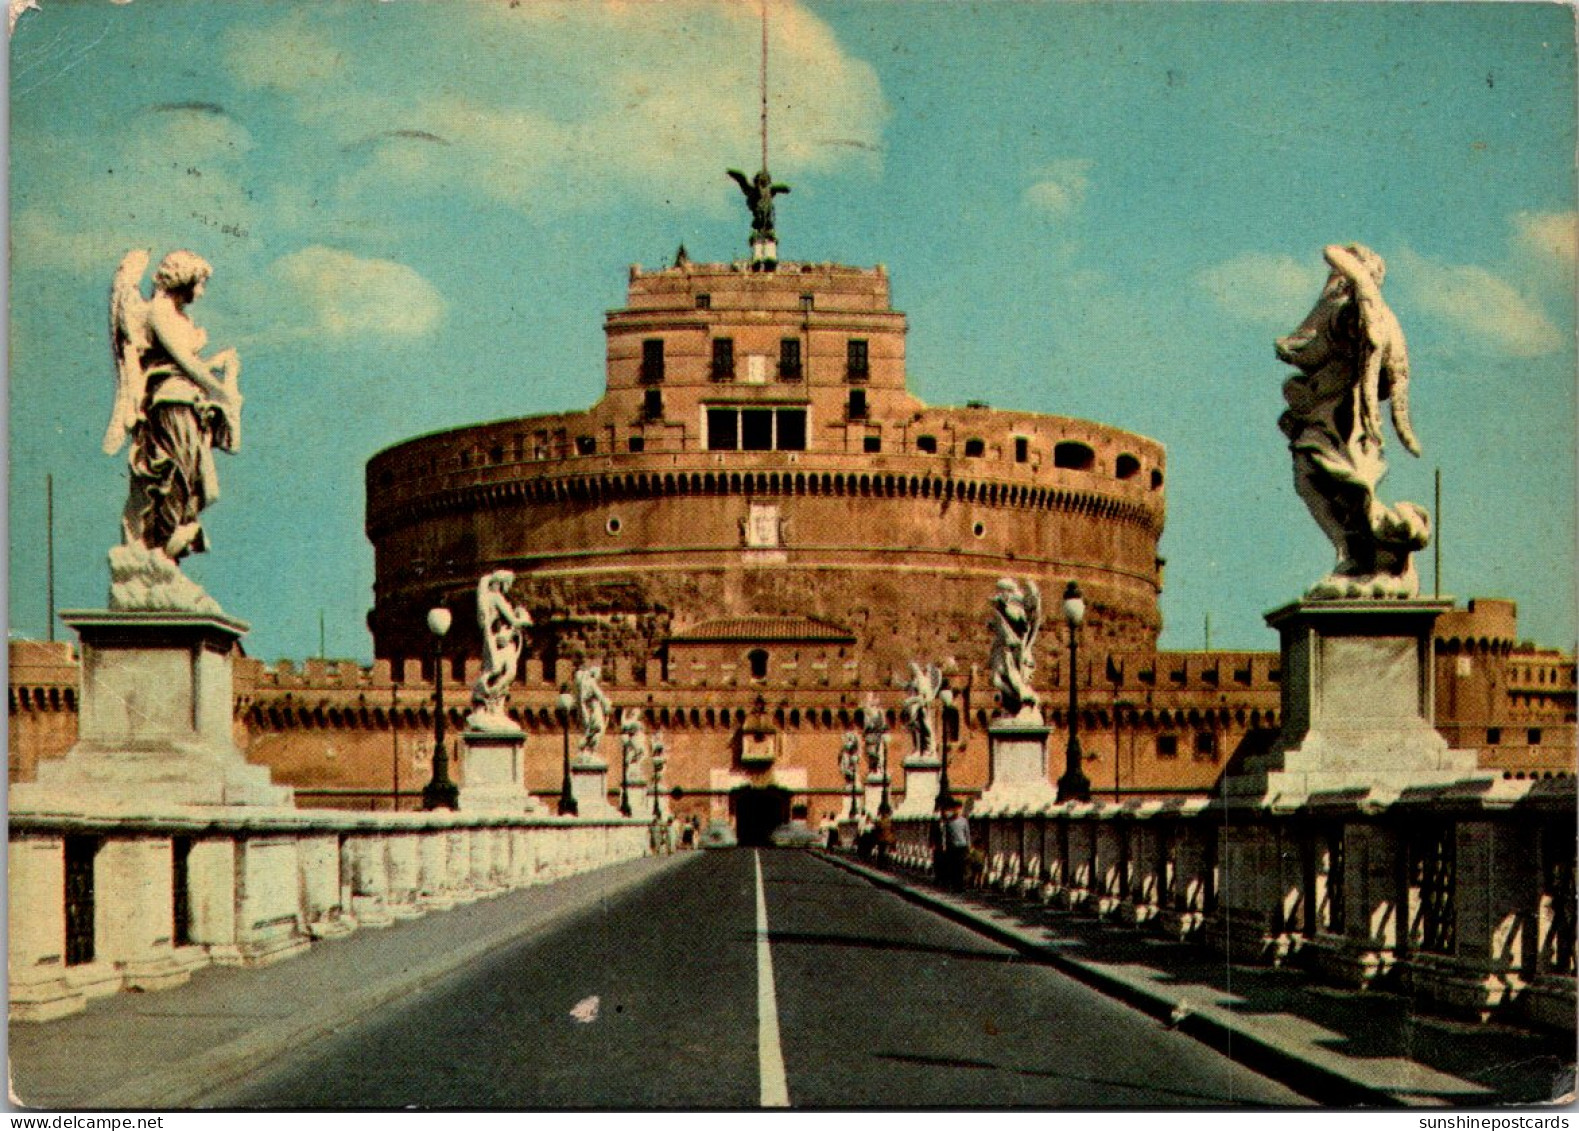 Italy Roma Rone Sant' Angelo Bridge And Castle 1963 - Pontes